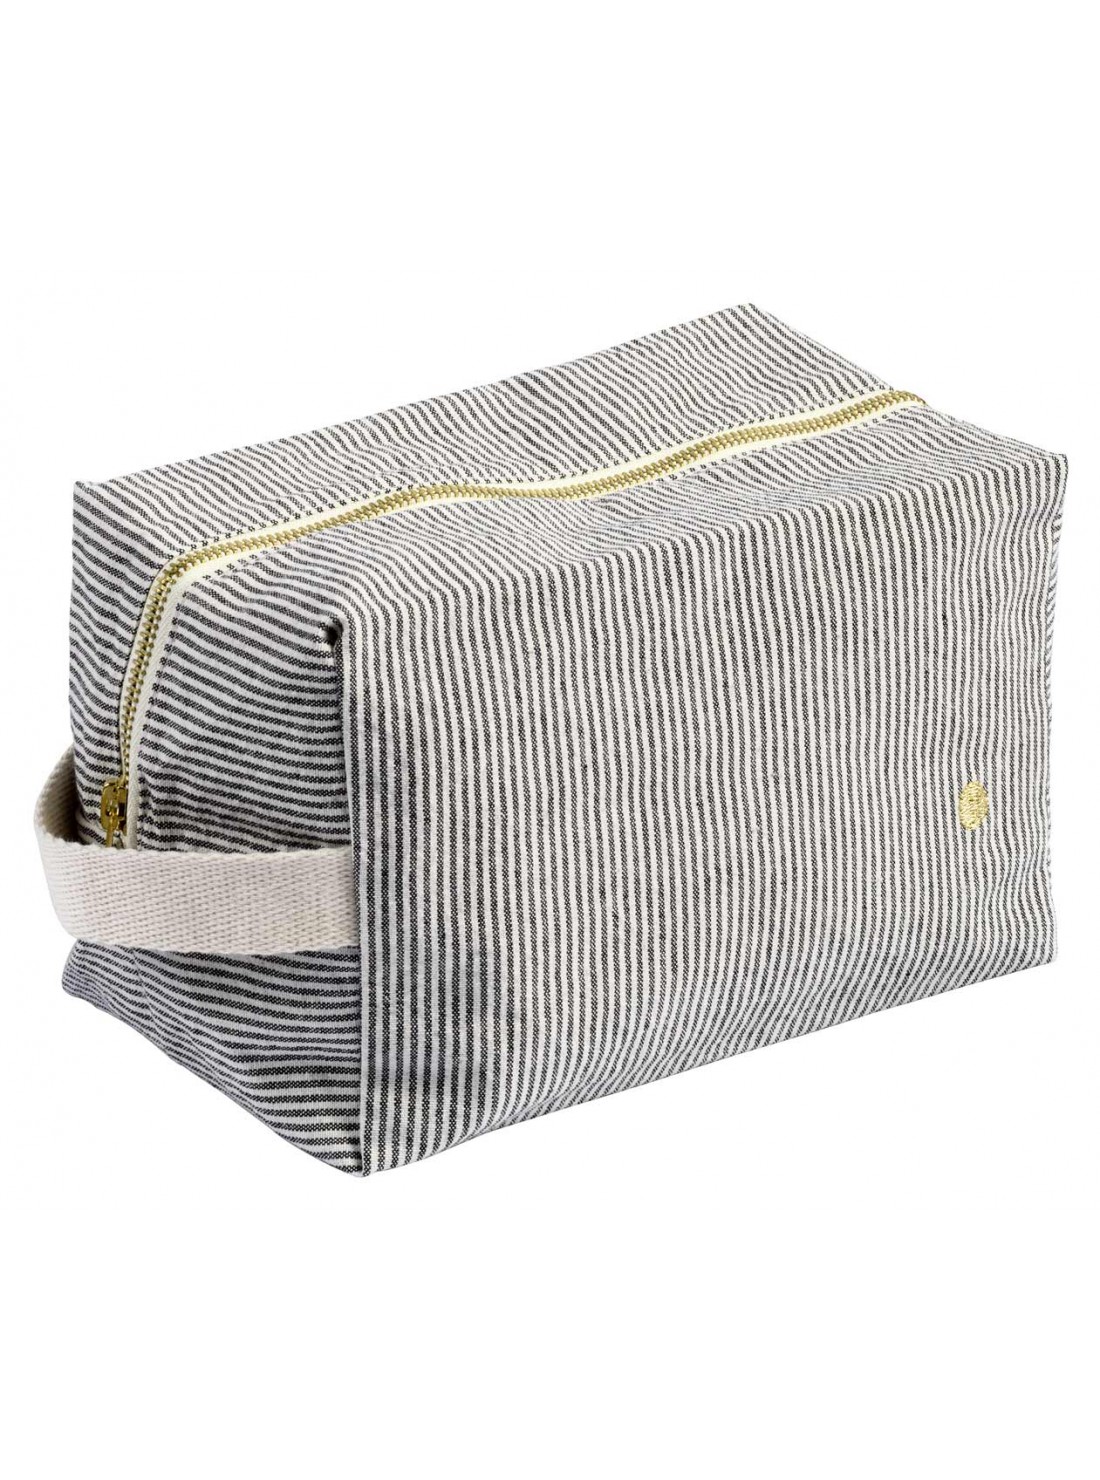 Trousse cube coton GM rayures noir et blanc